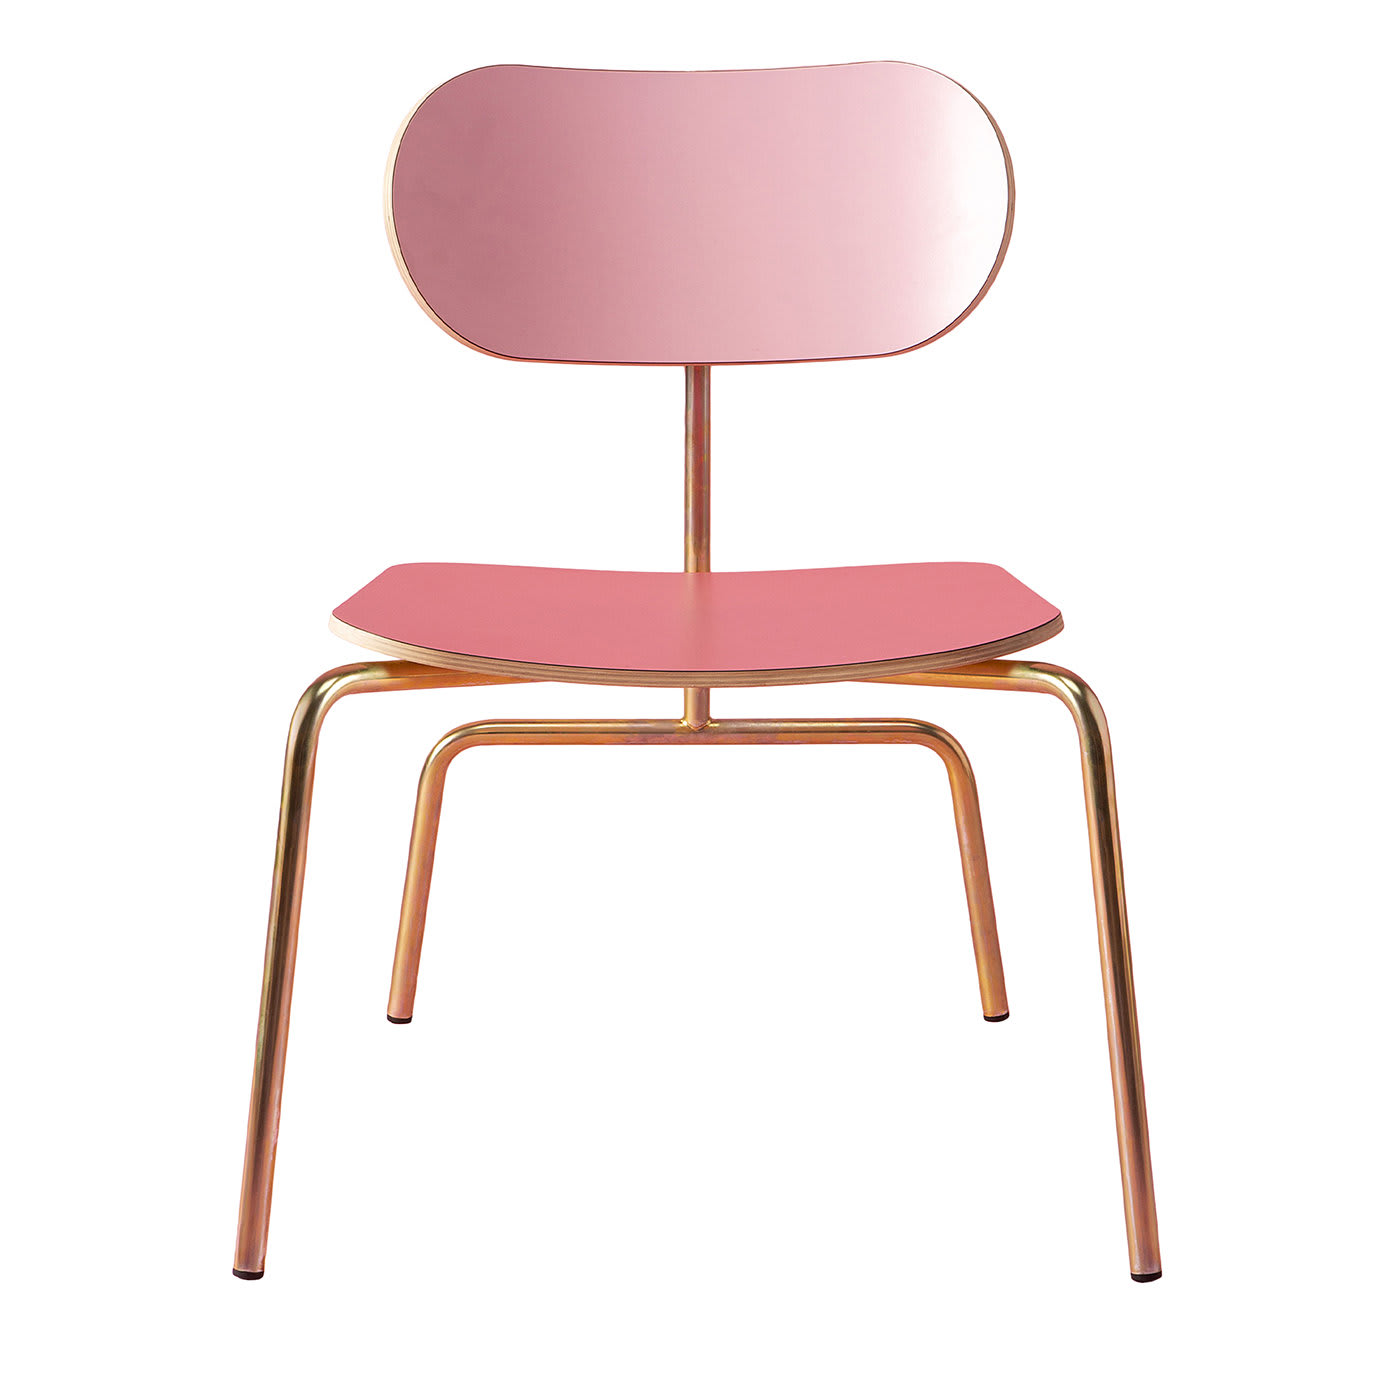 Lombrello Pink Lounge Chair by Andrea Forapani - Lombrello